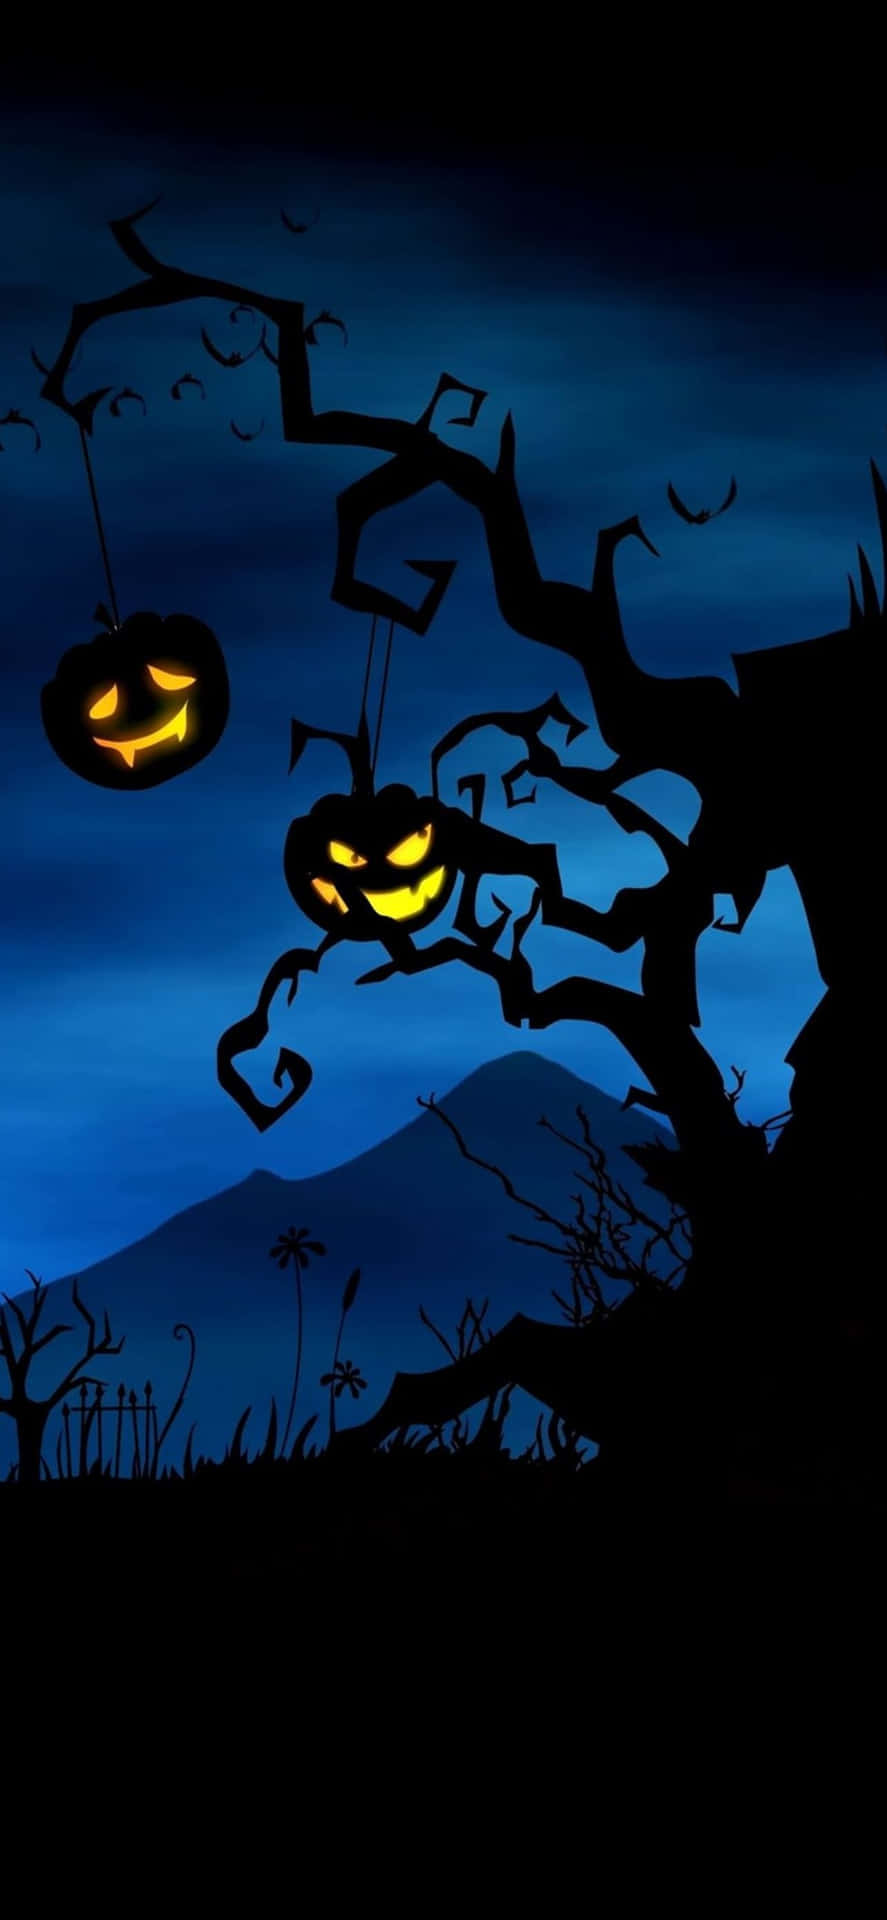 Gördig Redo För En Skrämmande-spöklig Oktober Med Denna Halloween-tematiserade Iphone-bakgrund.